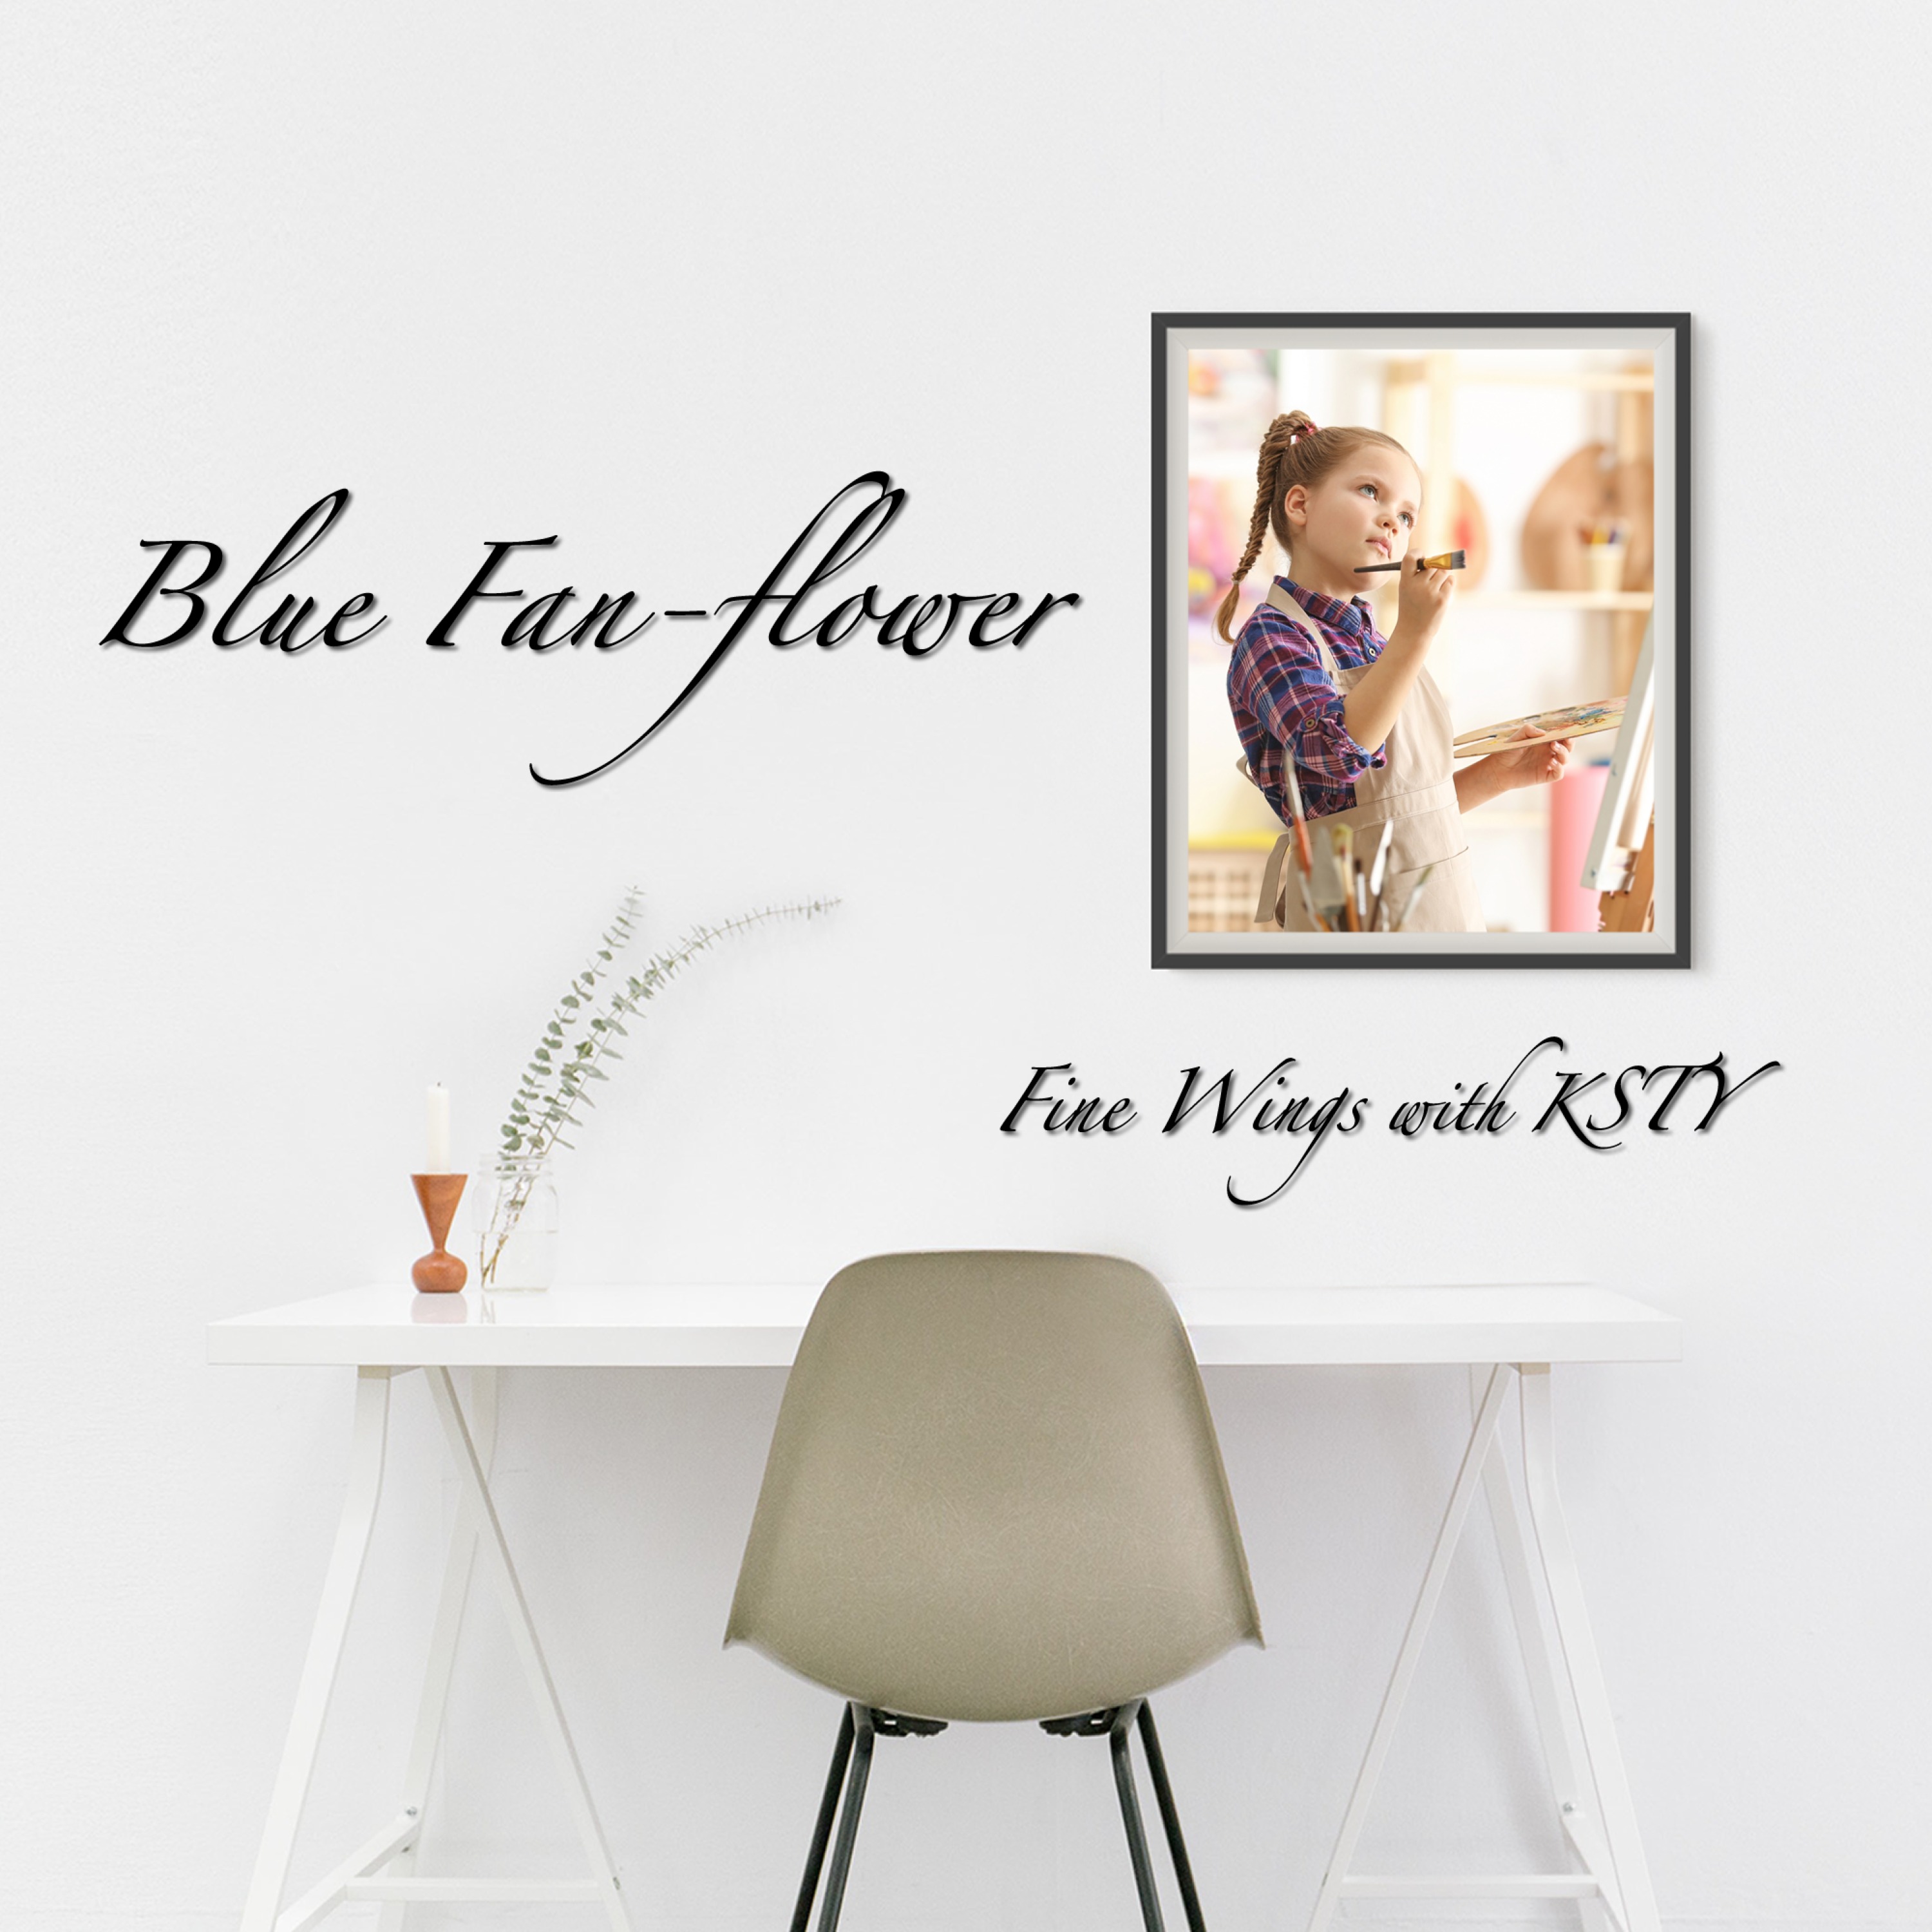 Blue Fan-flower アートワーク